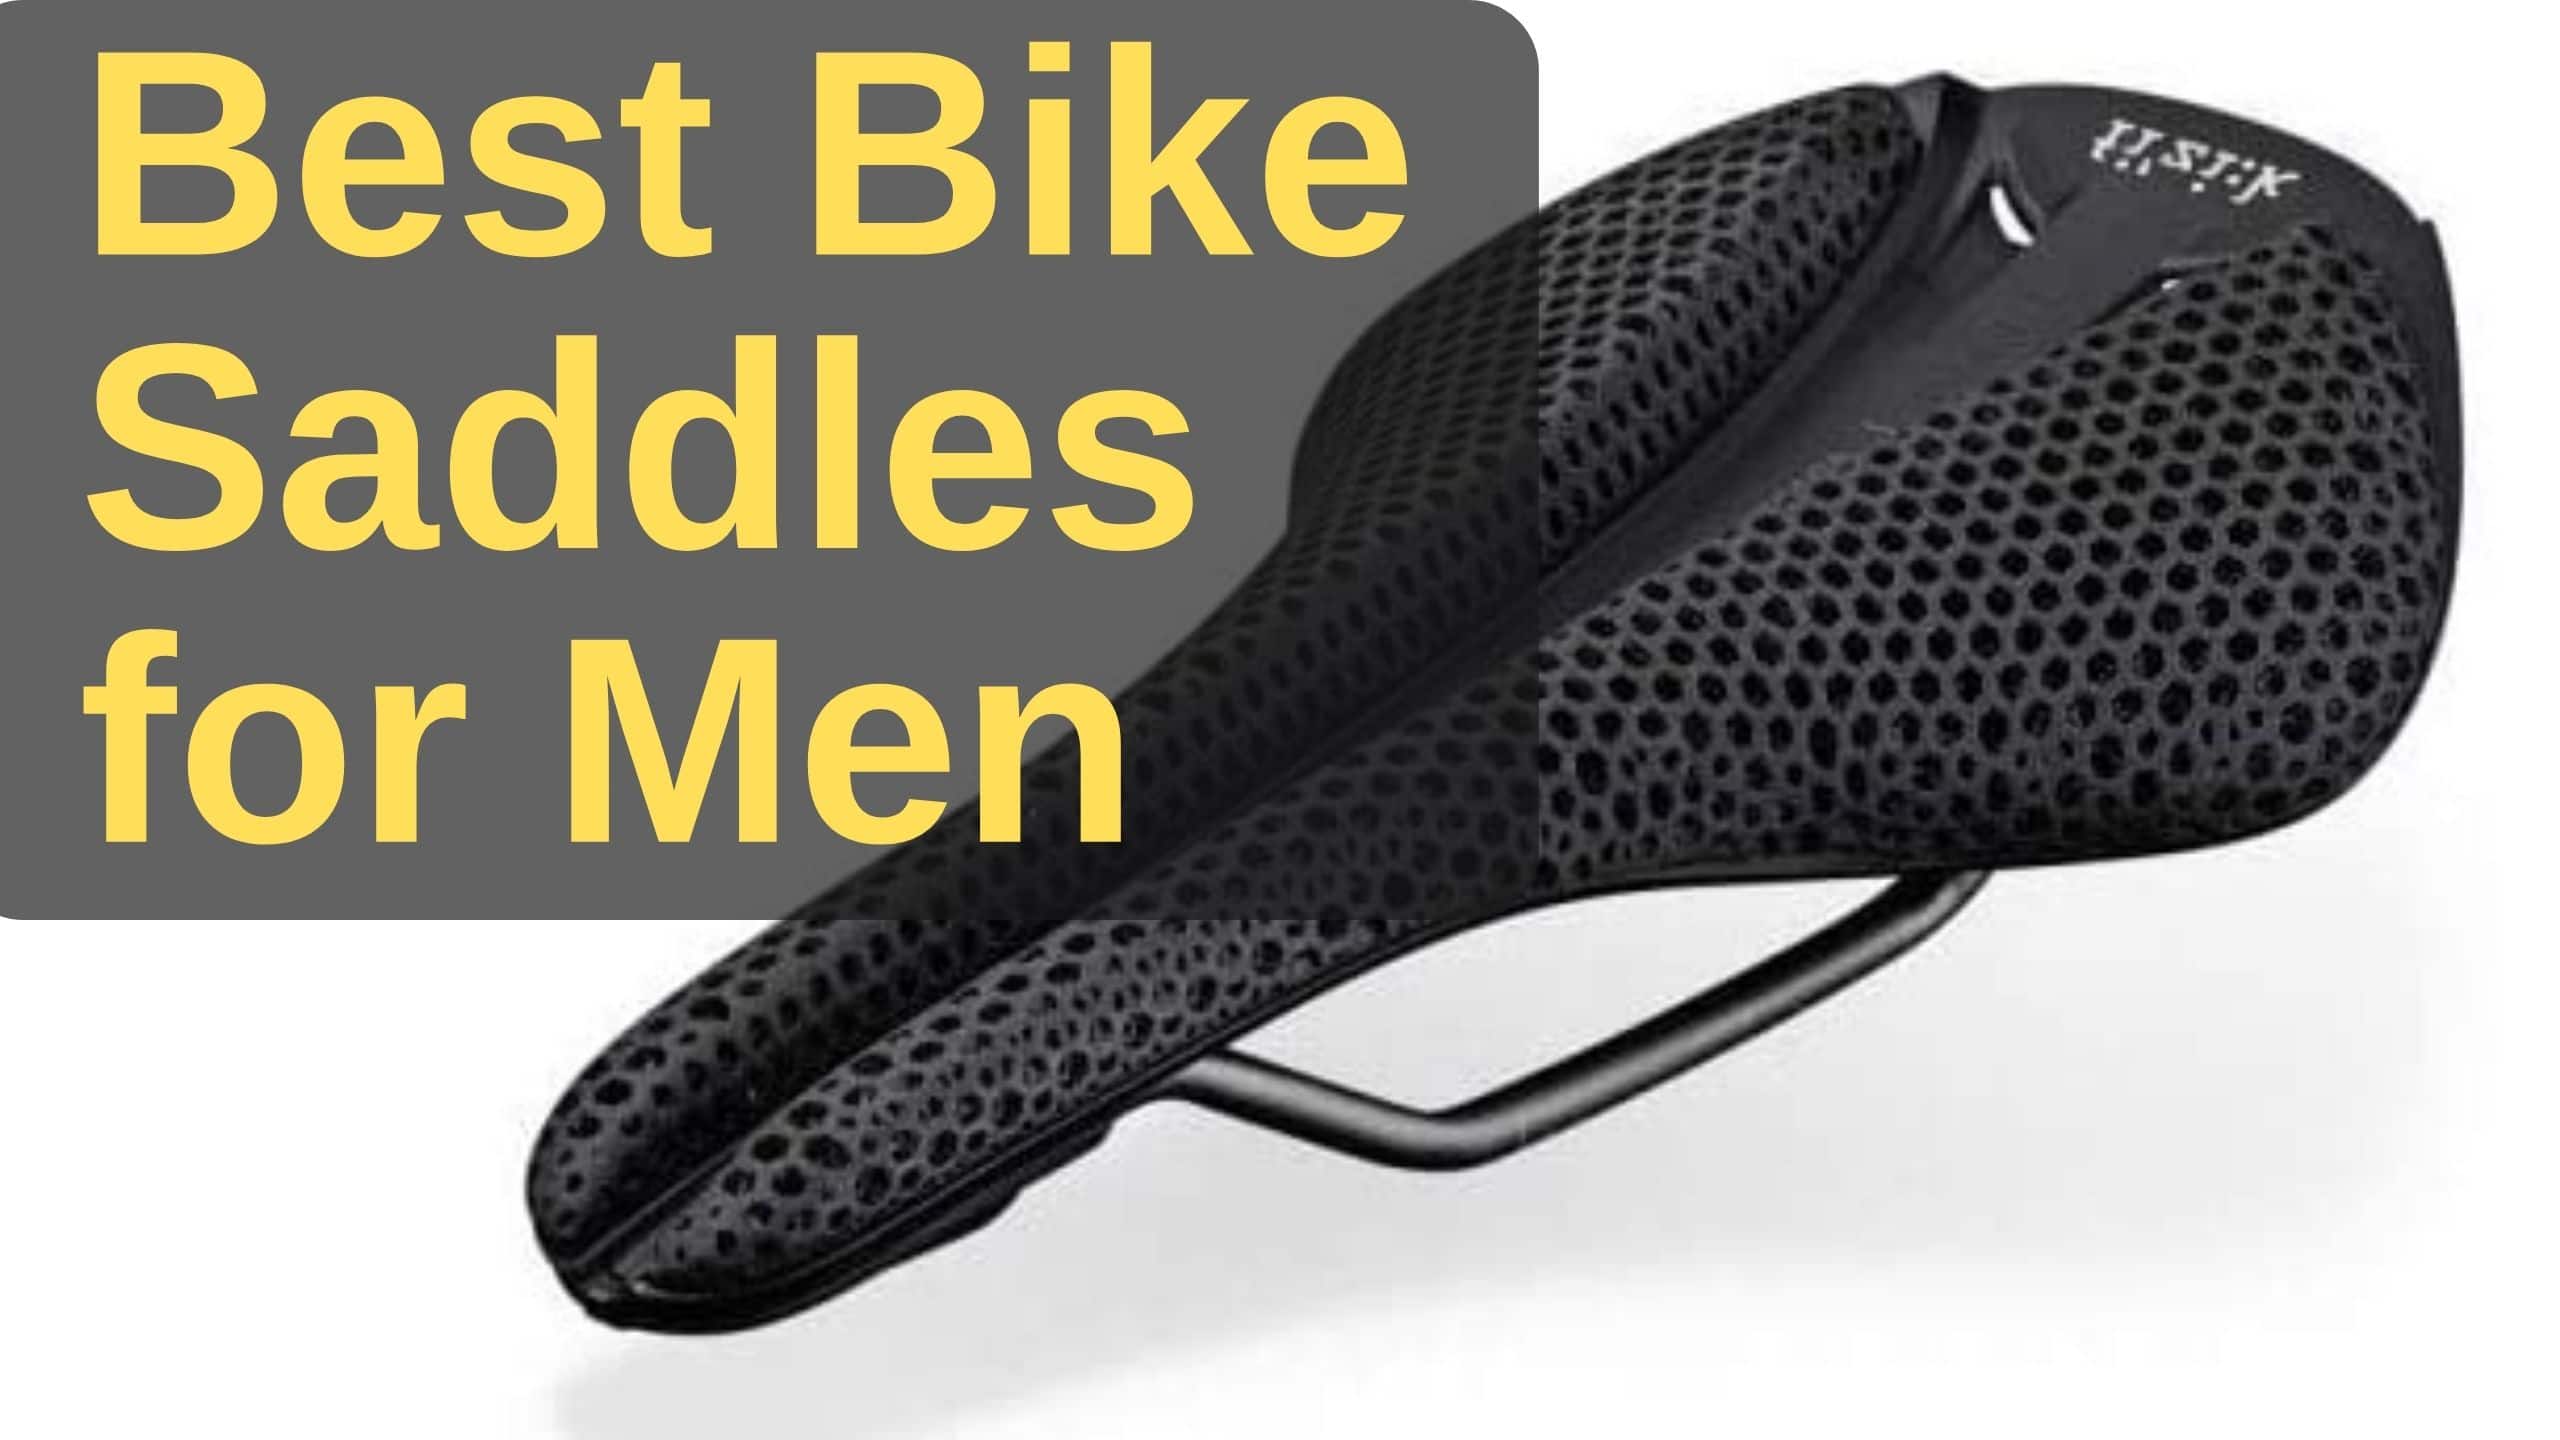 Best Bike Saddles for Men